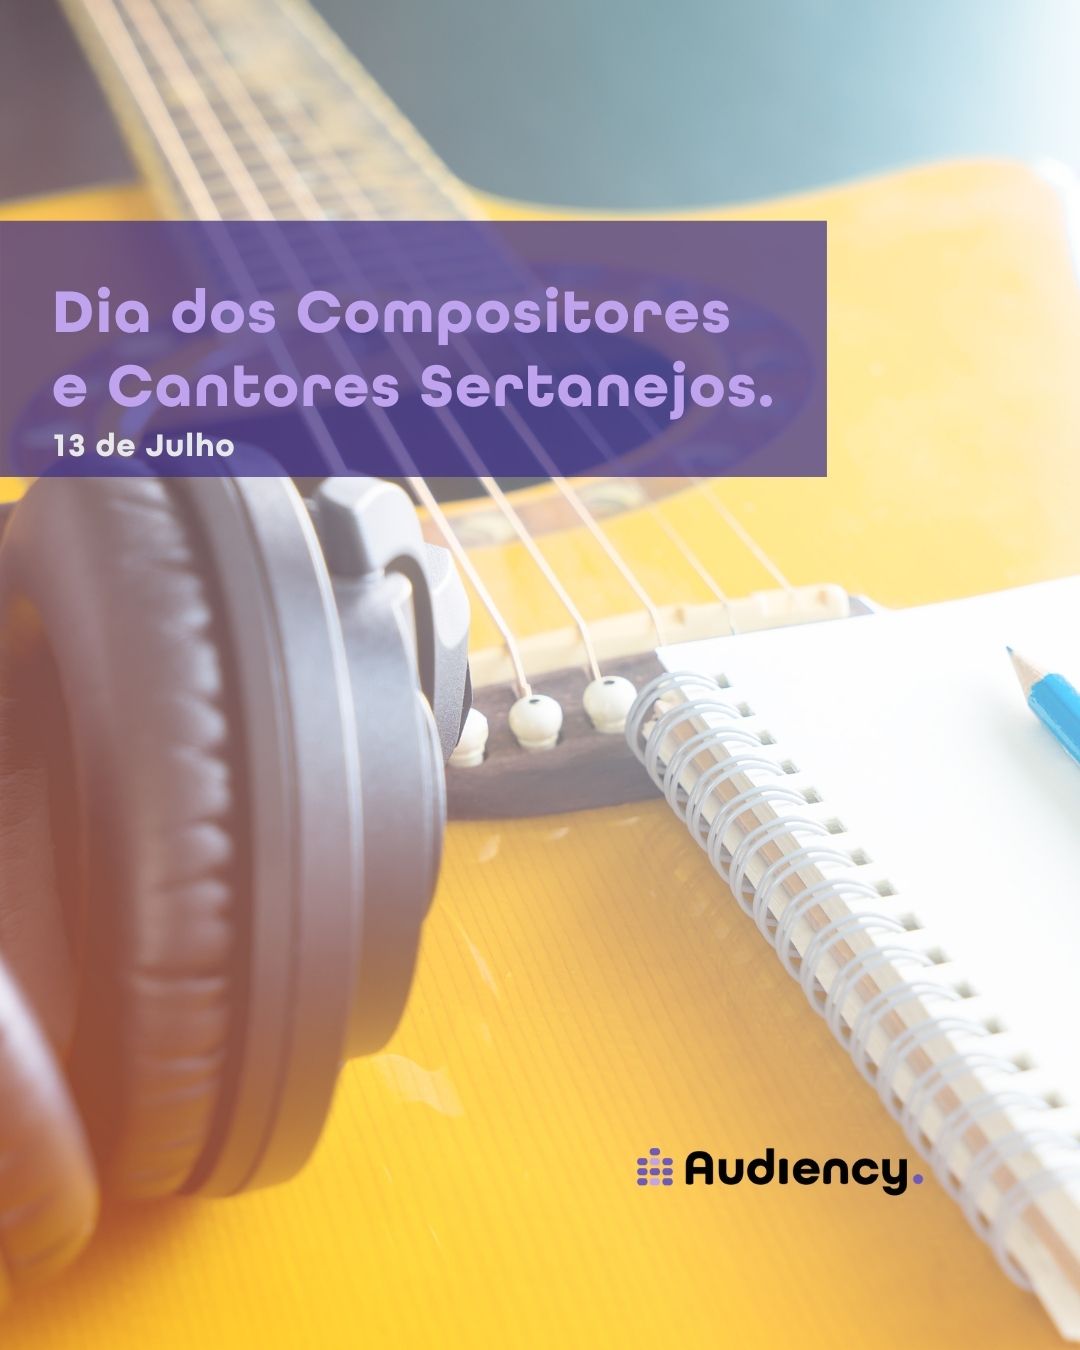 13 de Julho - Dia dos Compositores e Cantores Sertanejos confira a homenagem da Audiency